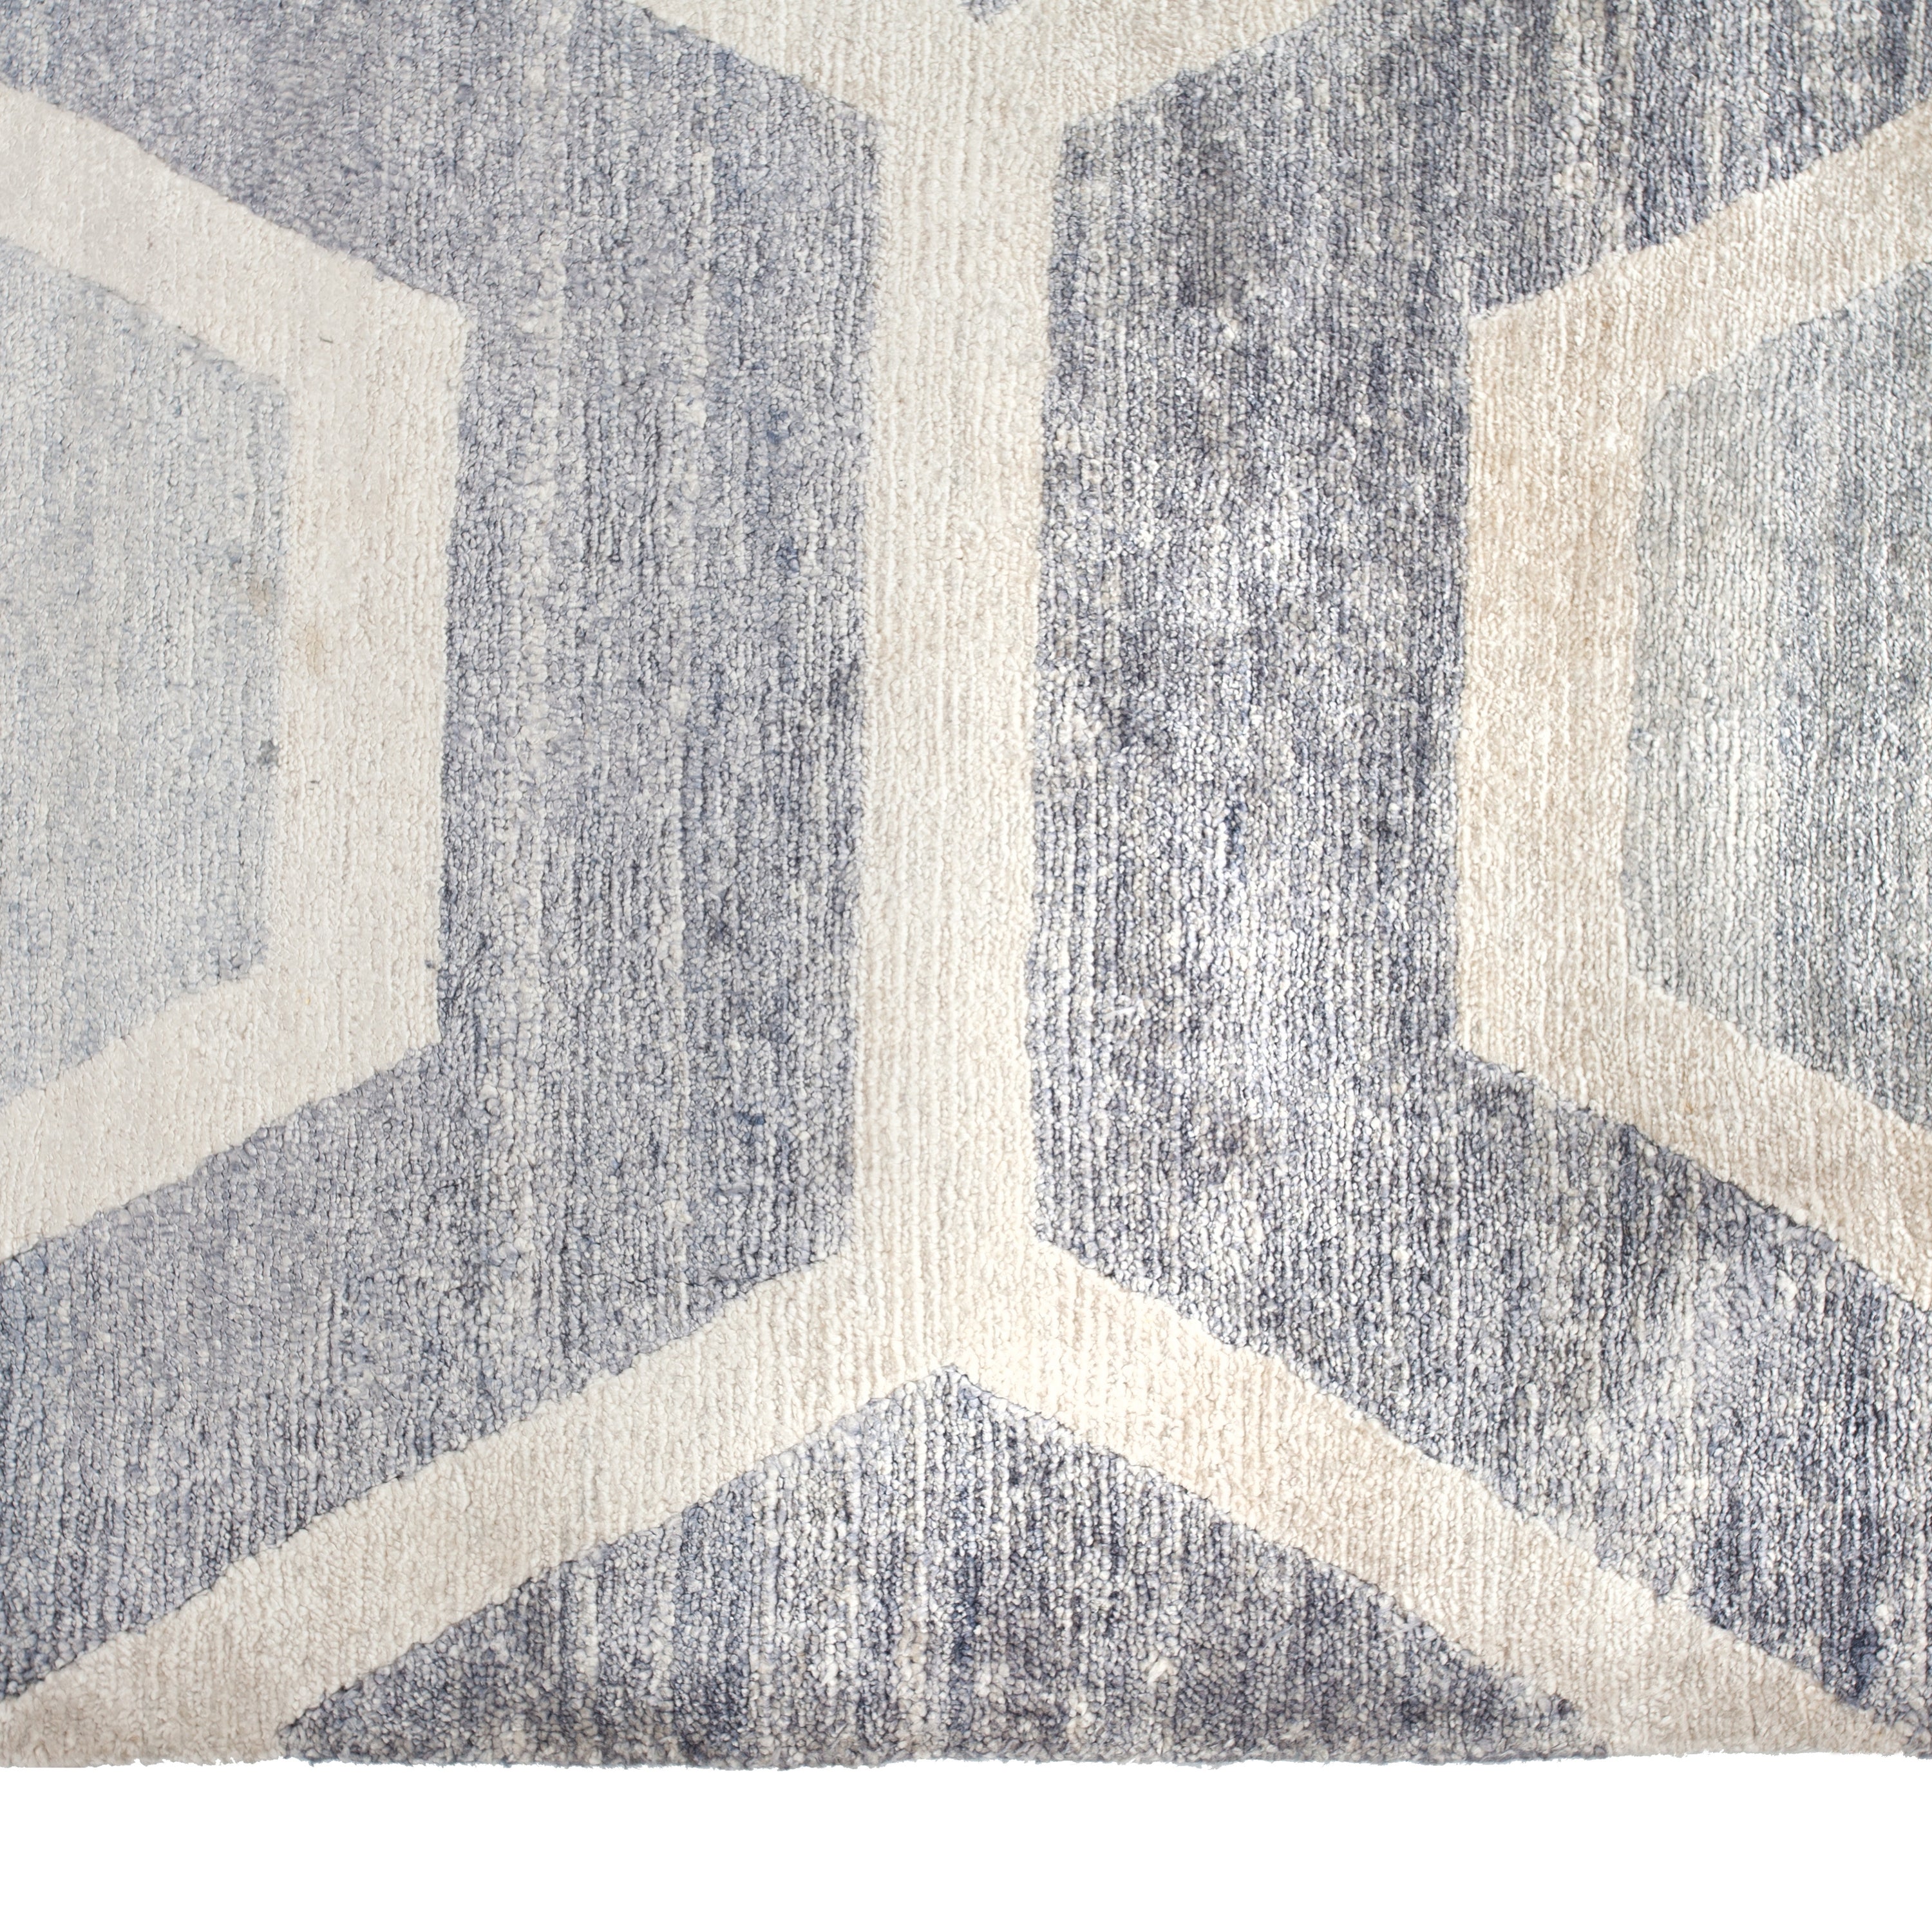 Grey Geometric Modern Art Silk Rug 9' x 12'3"